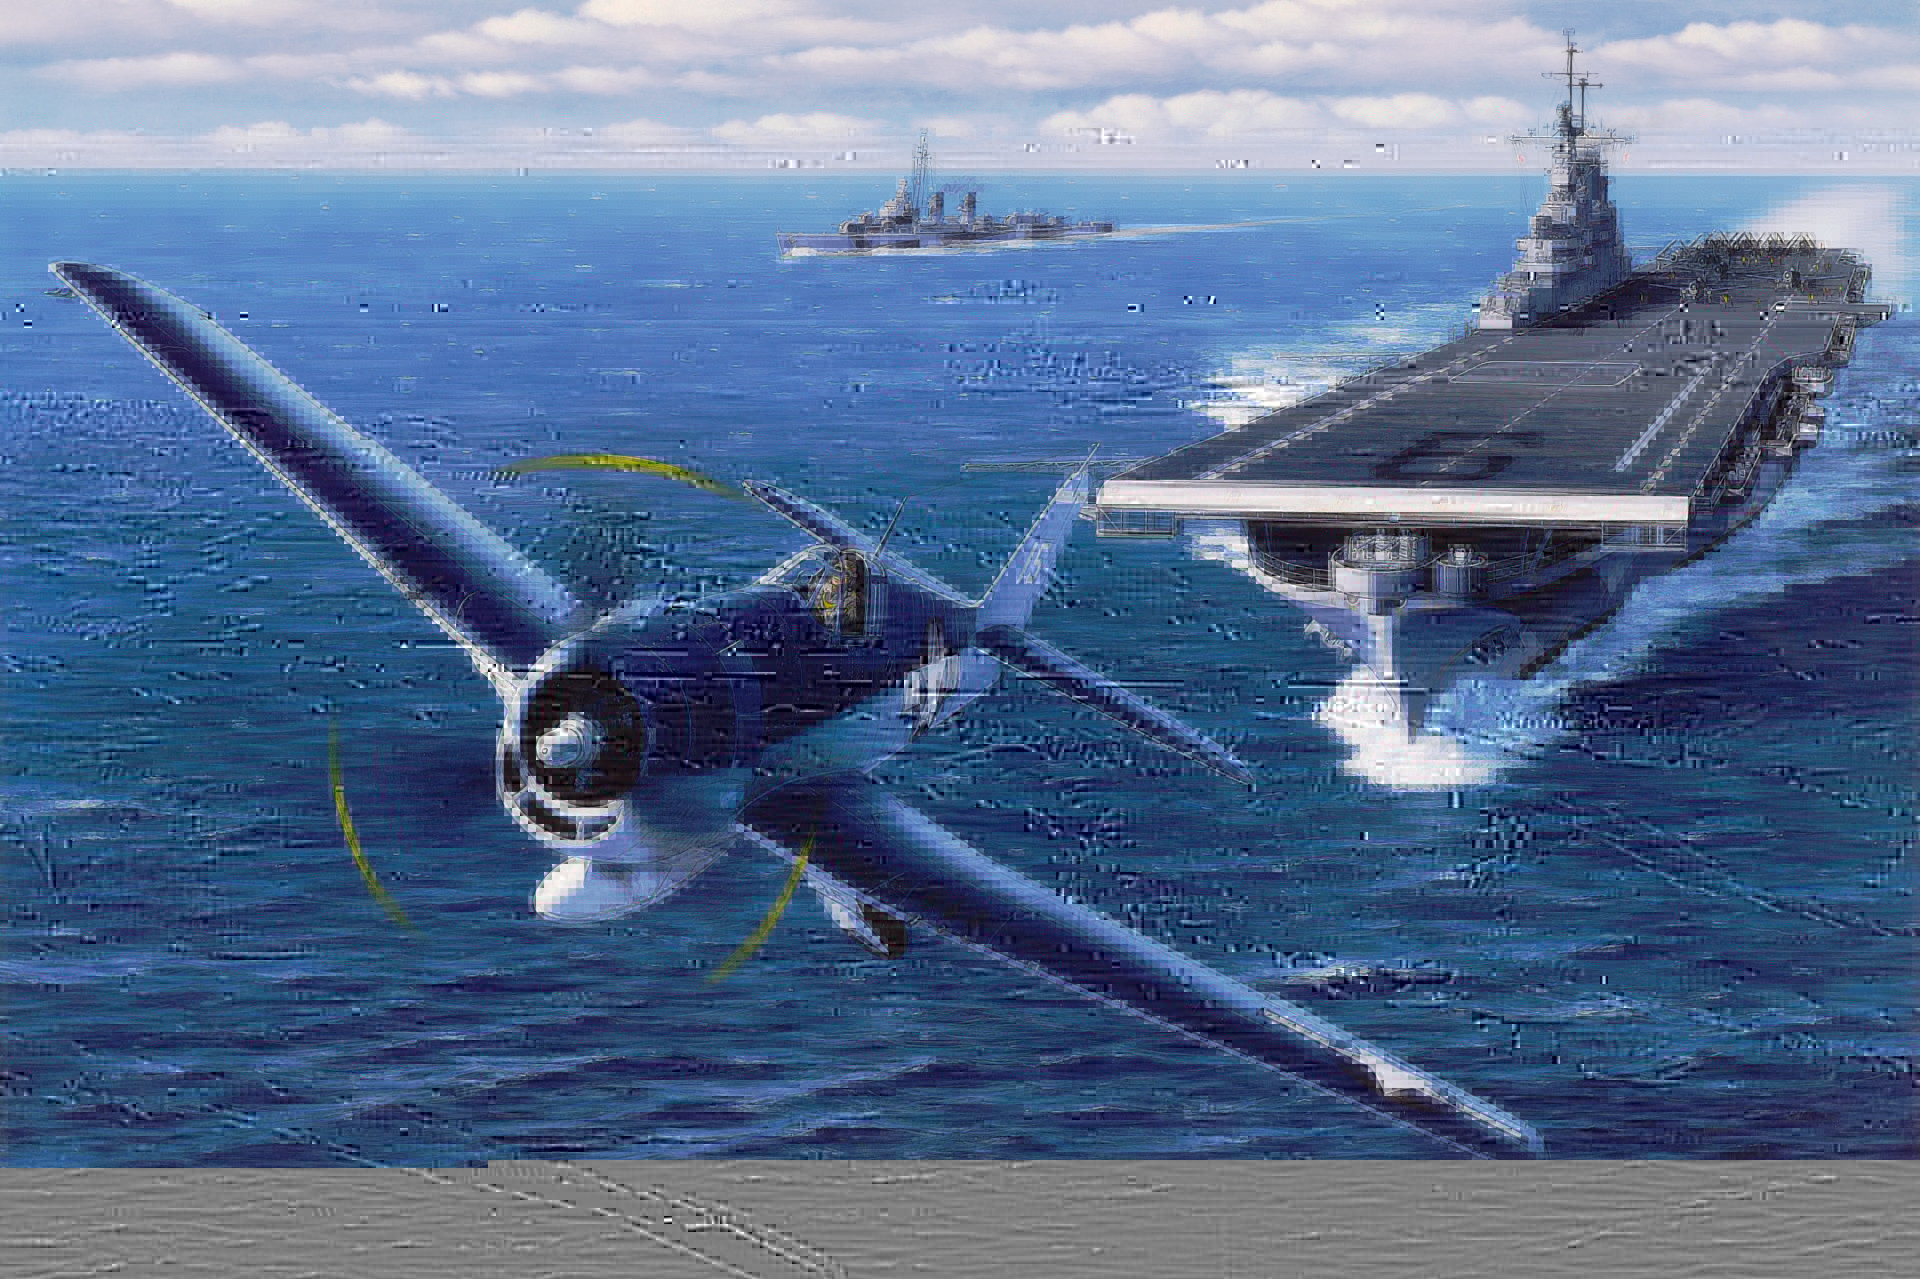 Wallpaper F6f Hellcat Airplane Aviation Art Painting Ww2 War